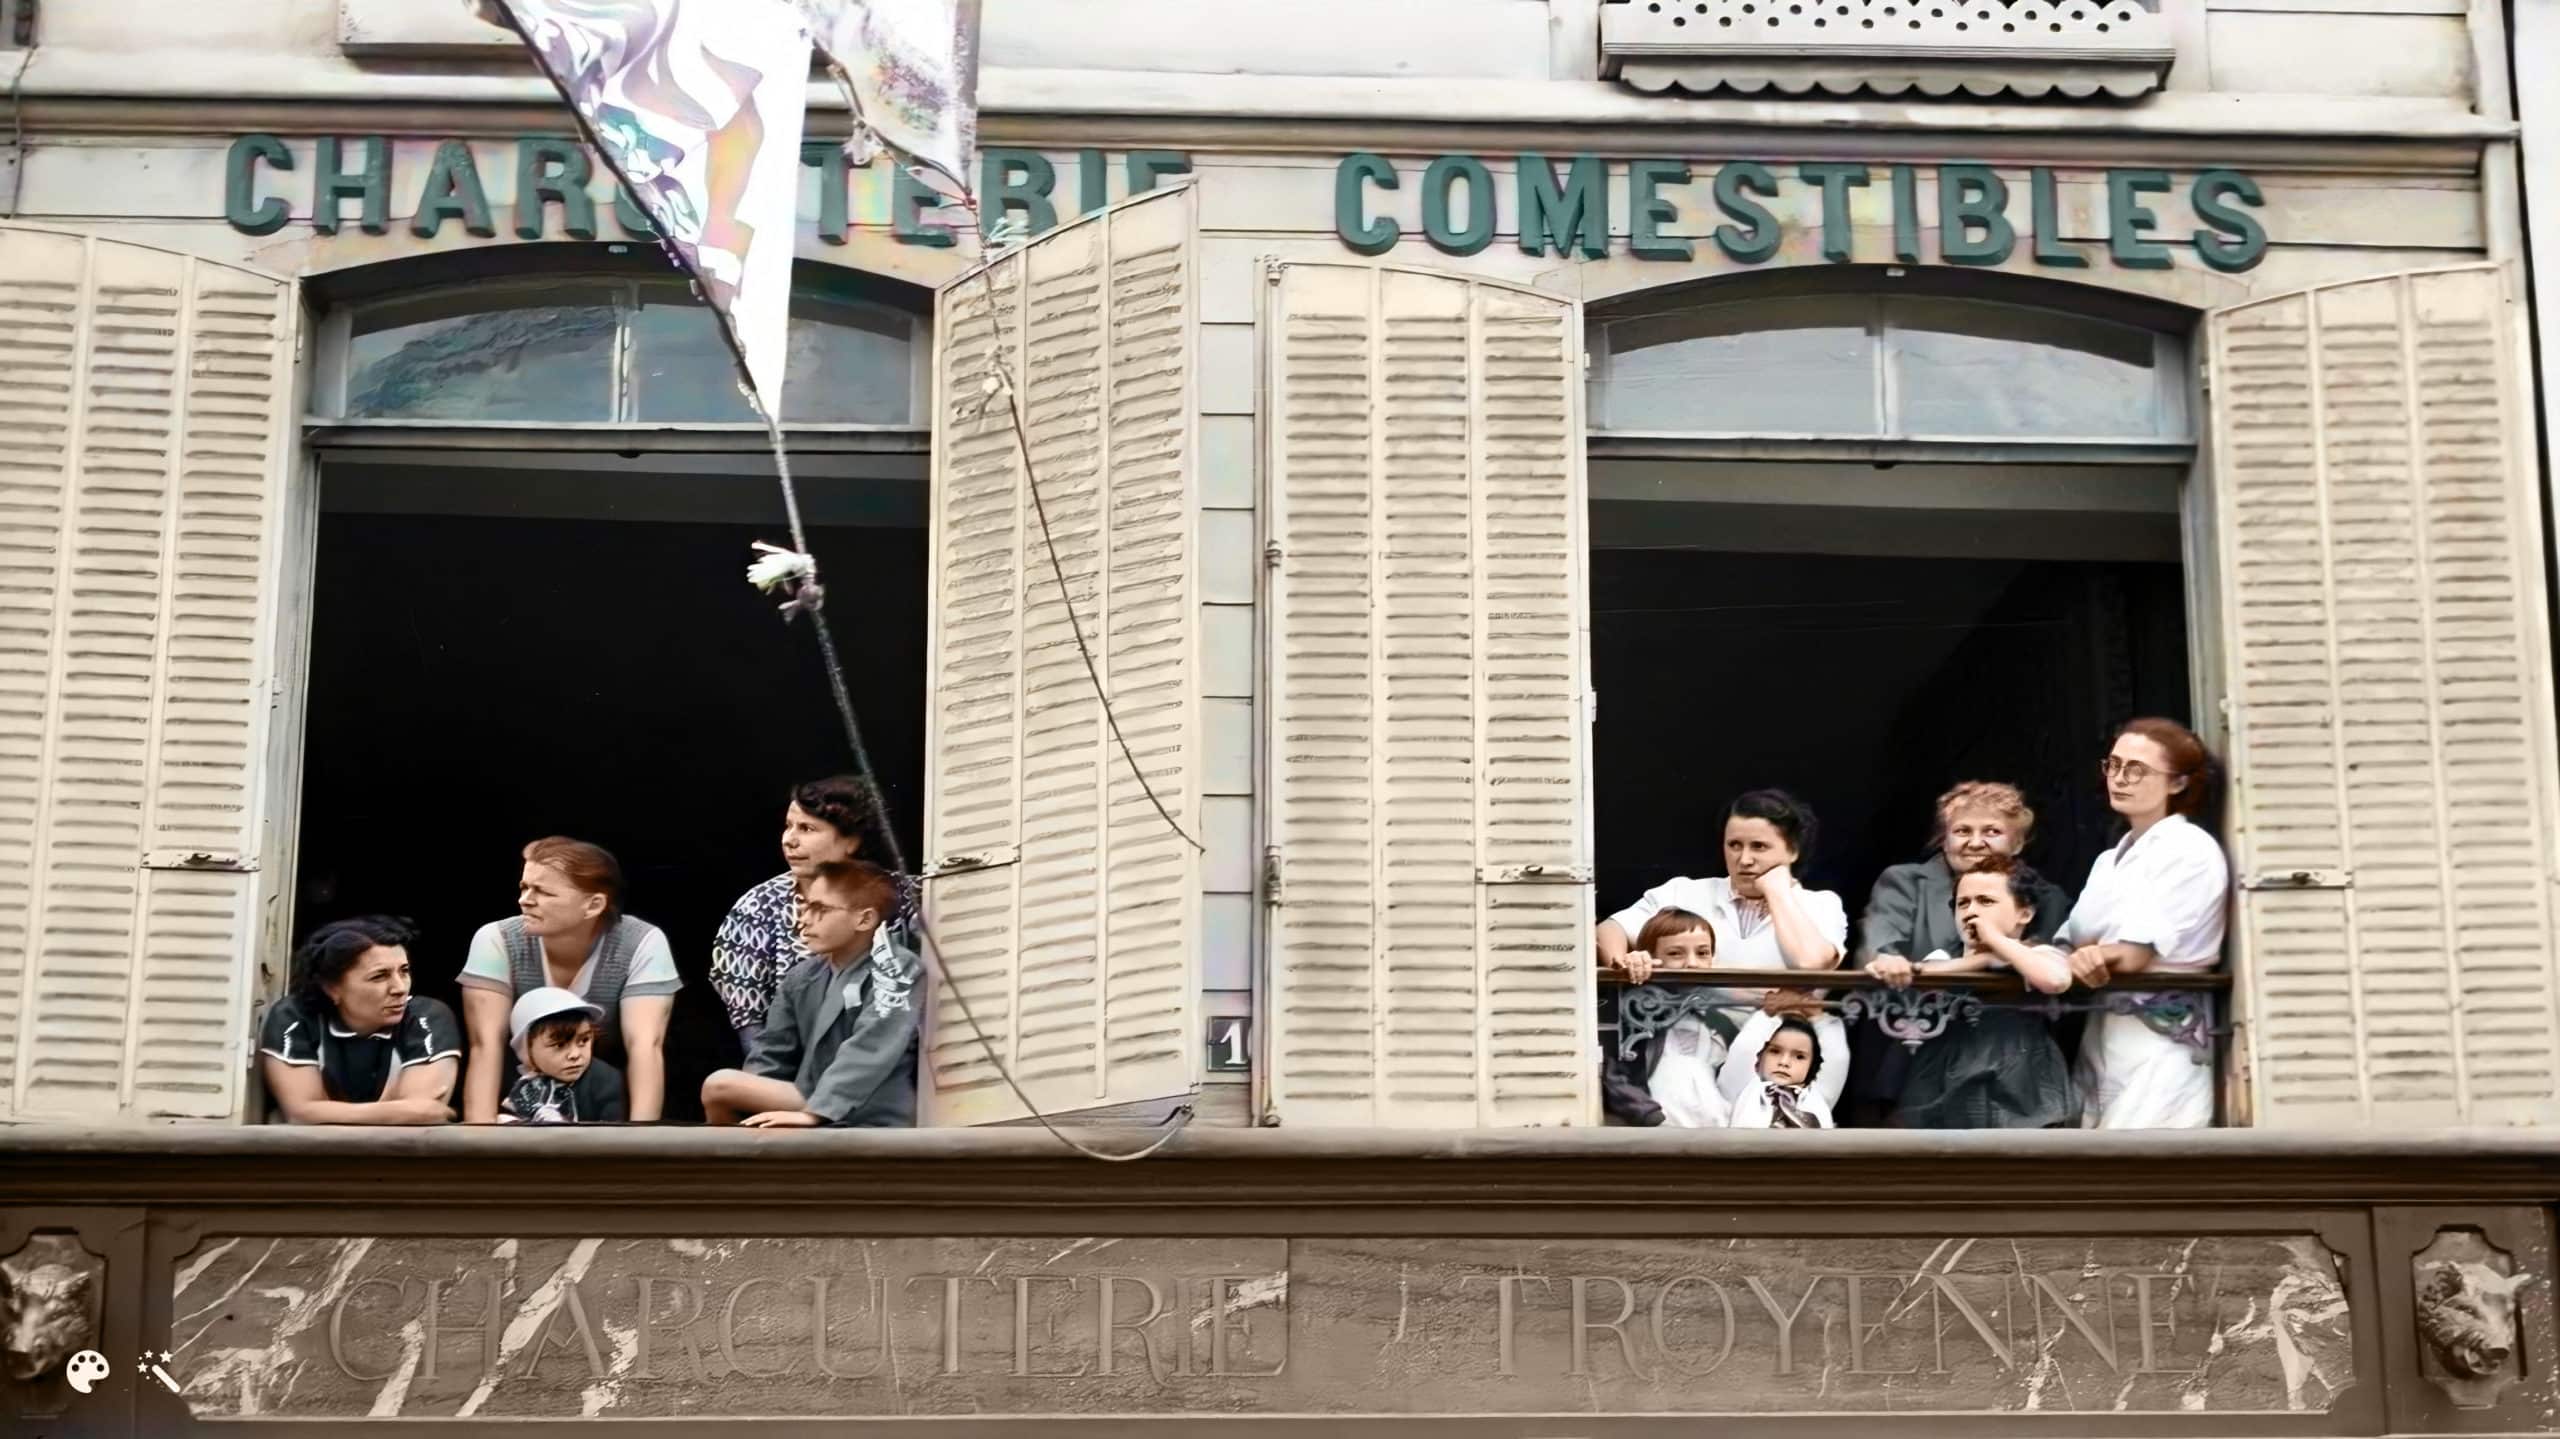 Pierre Boillon en zijn gezin kijken toe als de Tour de France langs hun bedrijf in Bar-sur-Aube rijdt. Foto met dank aan Pierre Boillon, ingekleurd en verbeterd door MyHeritage